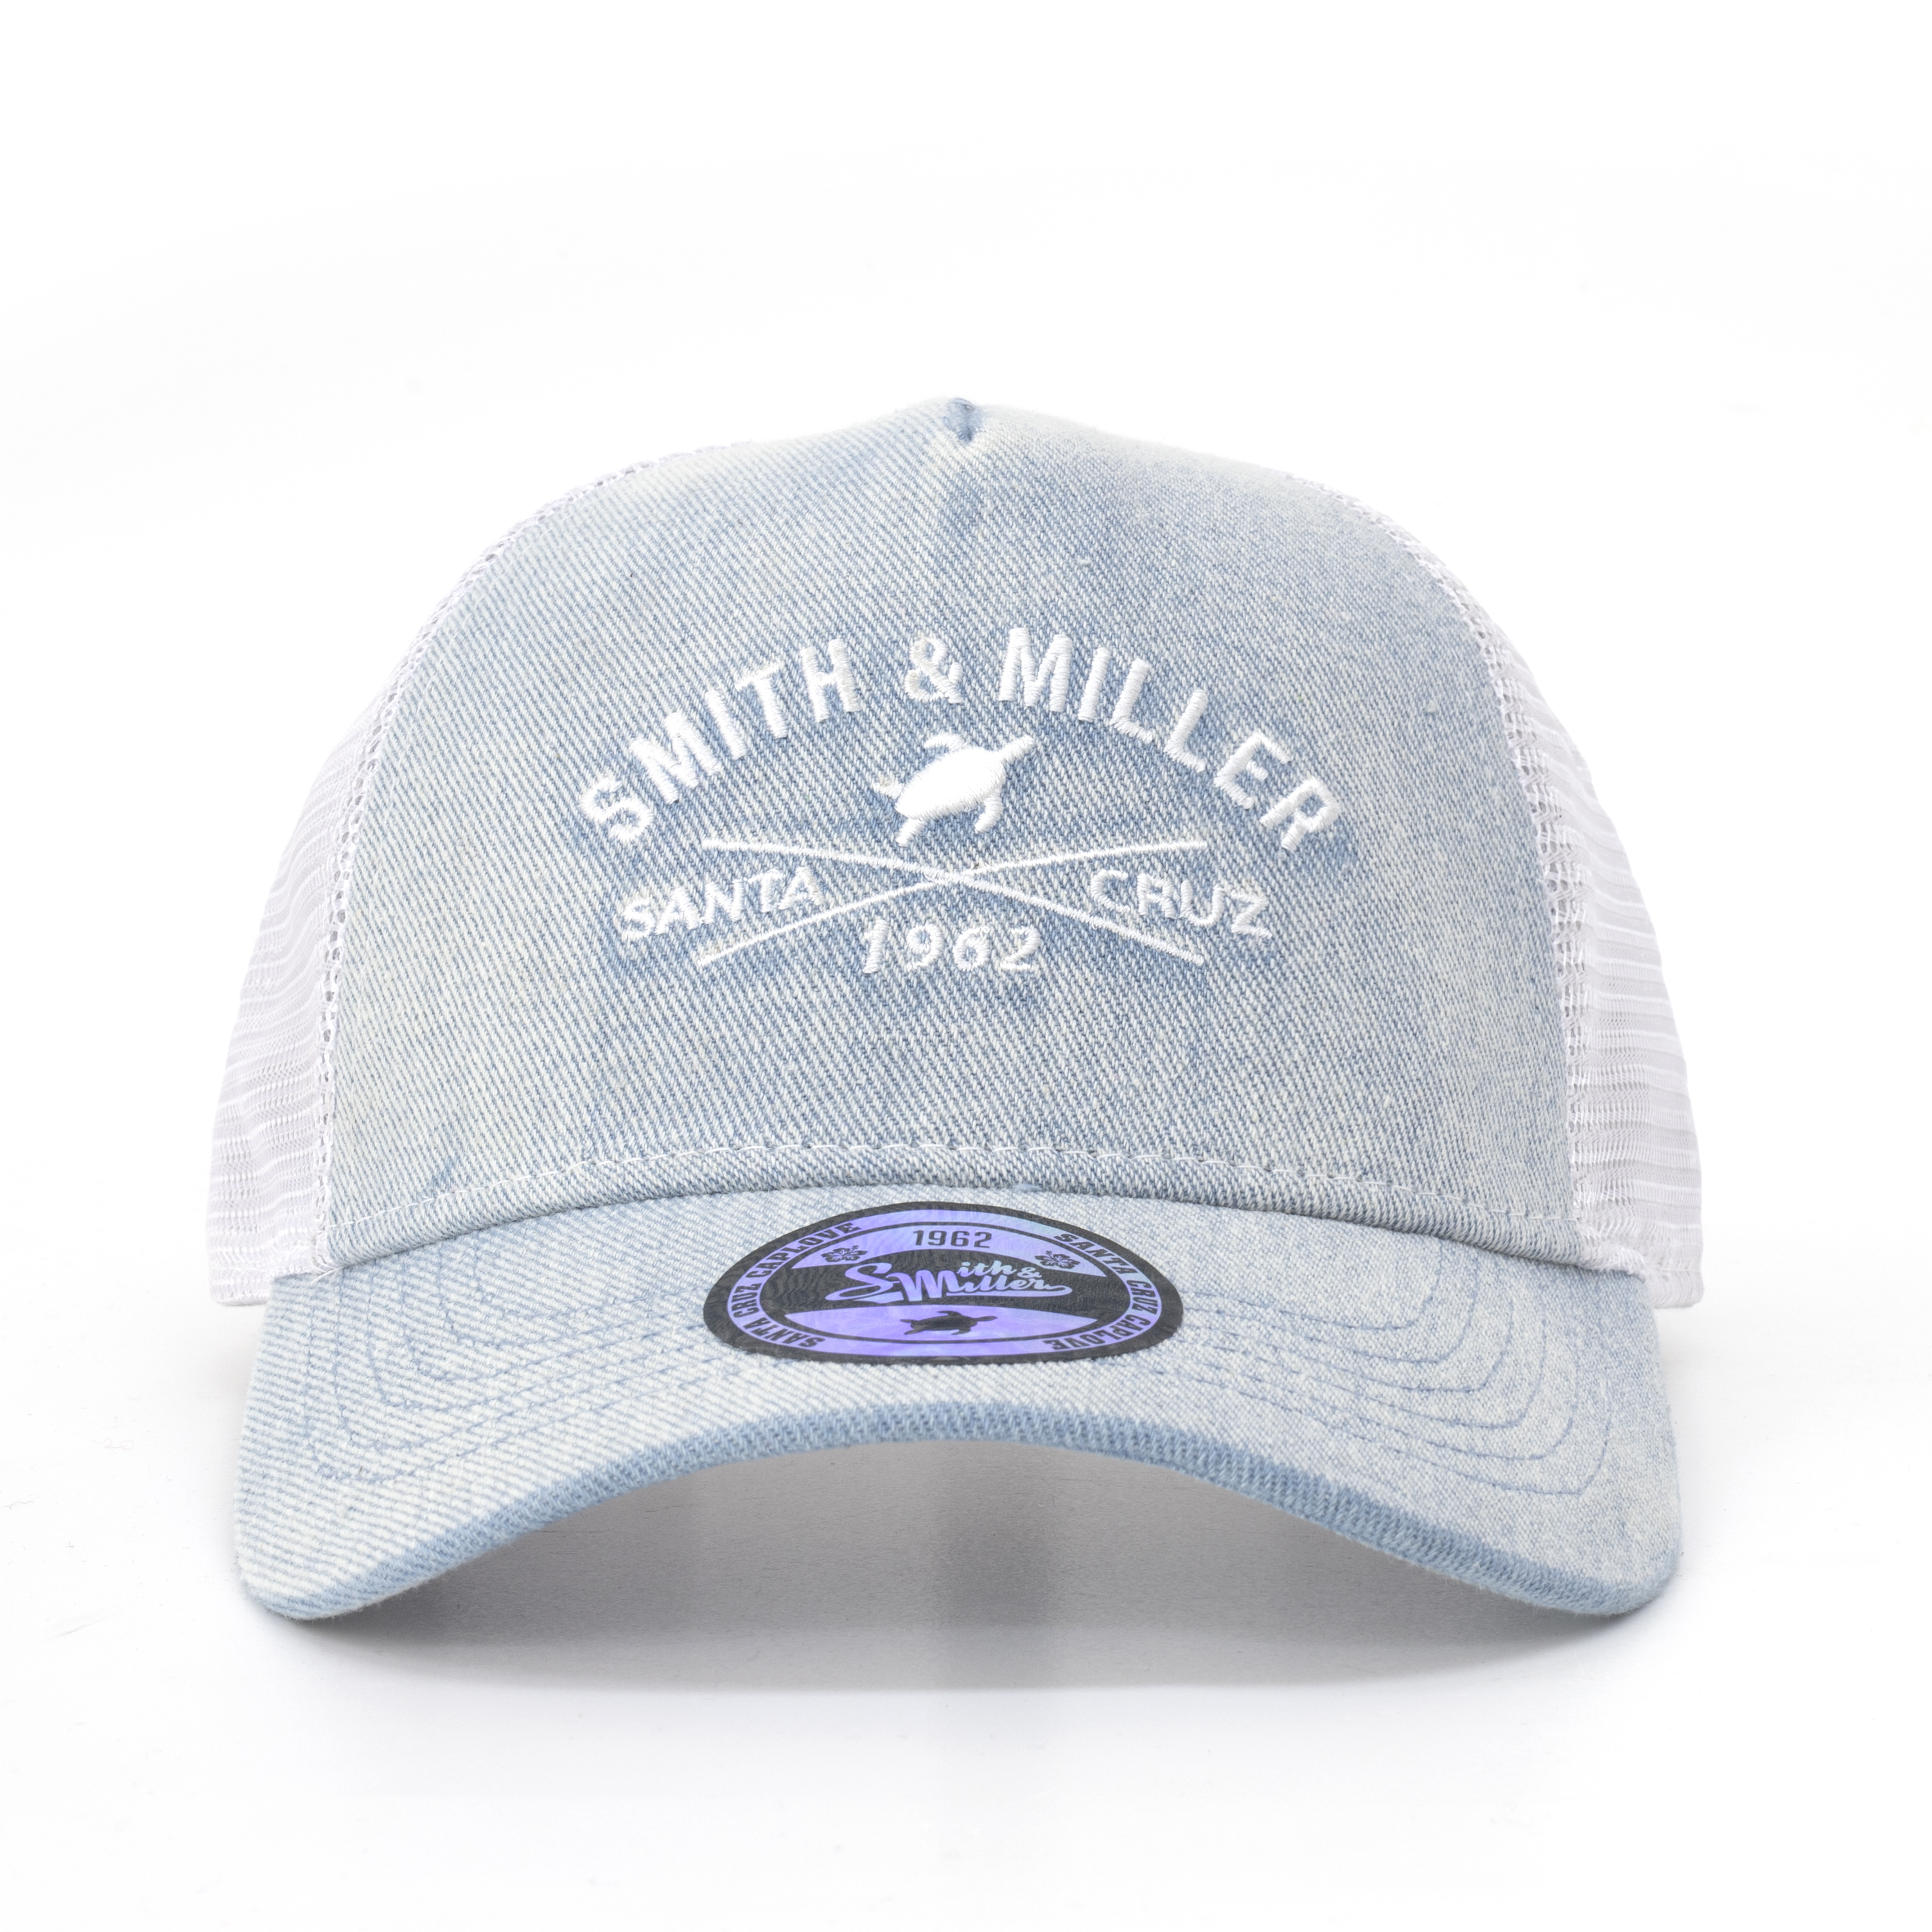 Smith & Miller Pasadena Trucker Cap, light denim - white